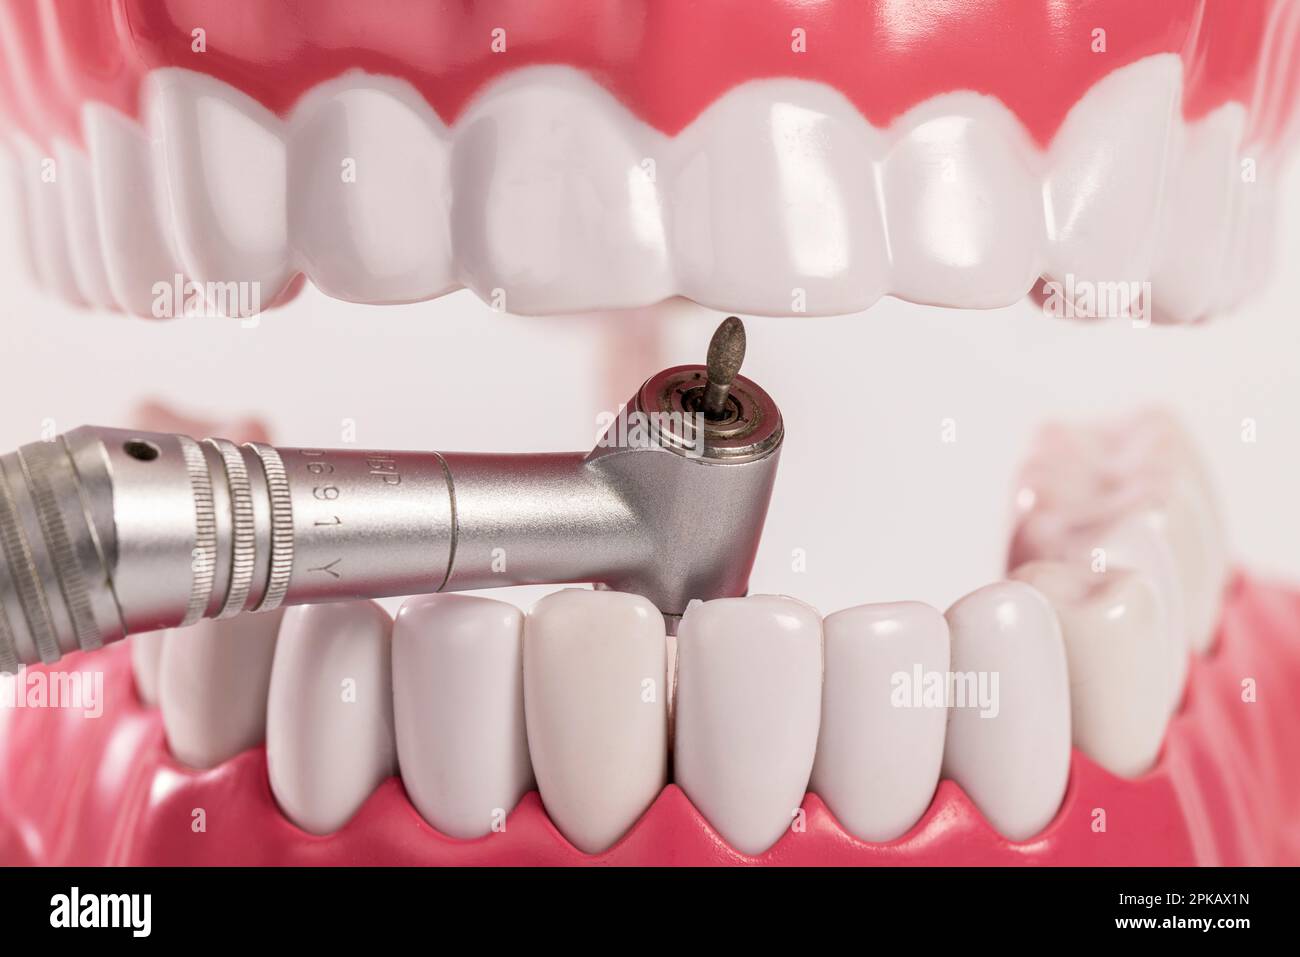 Dentist drill, dettaglio, immagine simbolo, visita dentista paura di perforazione, cura dentale, modello di cura dentale di base, Foto Stock